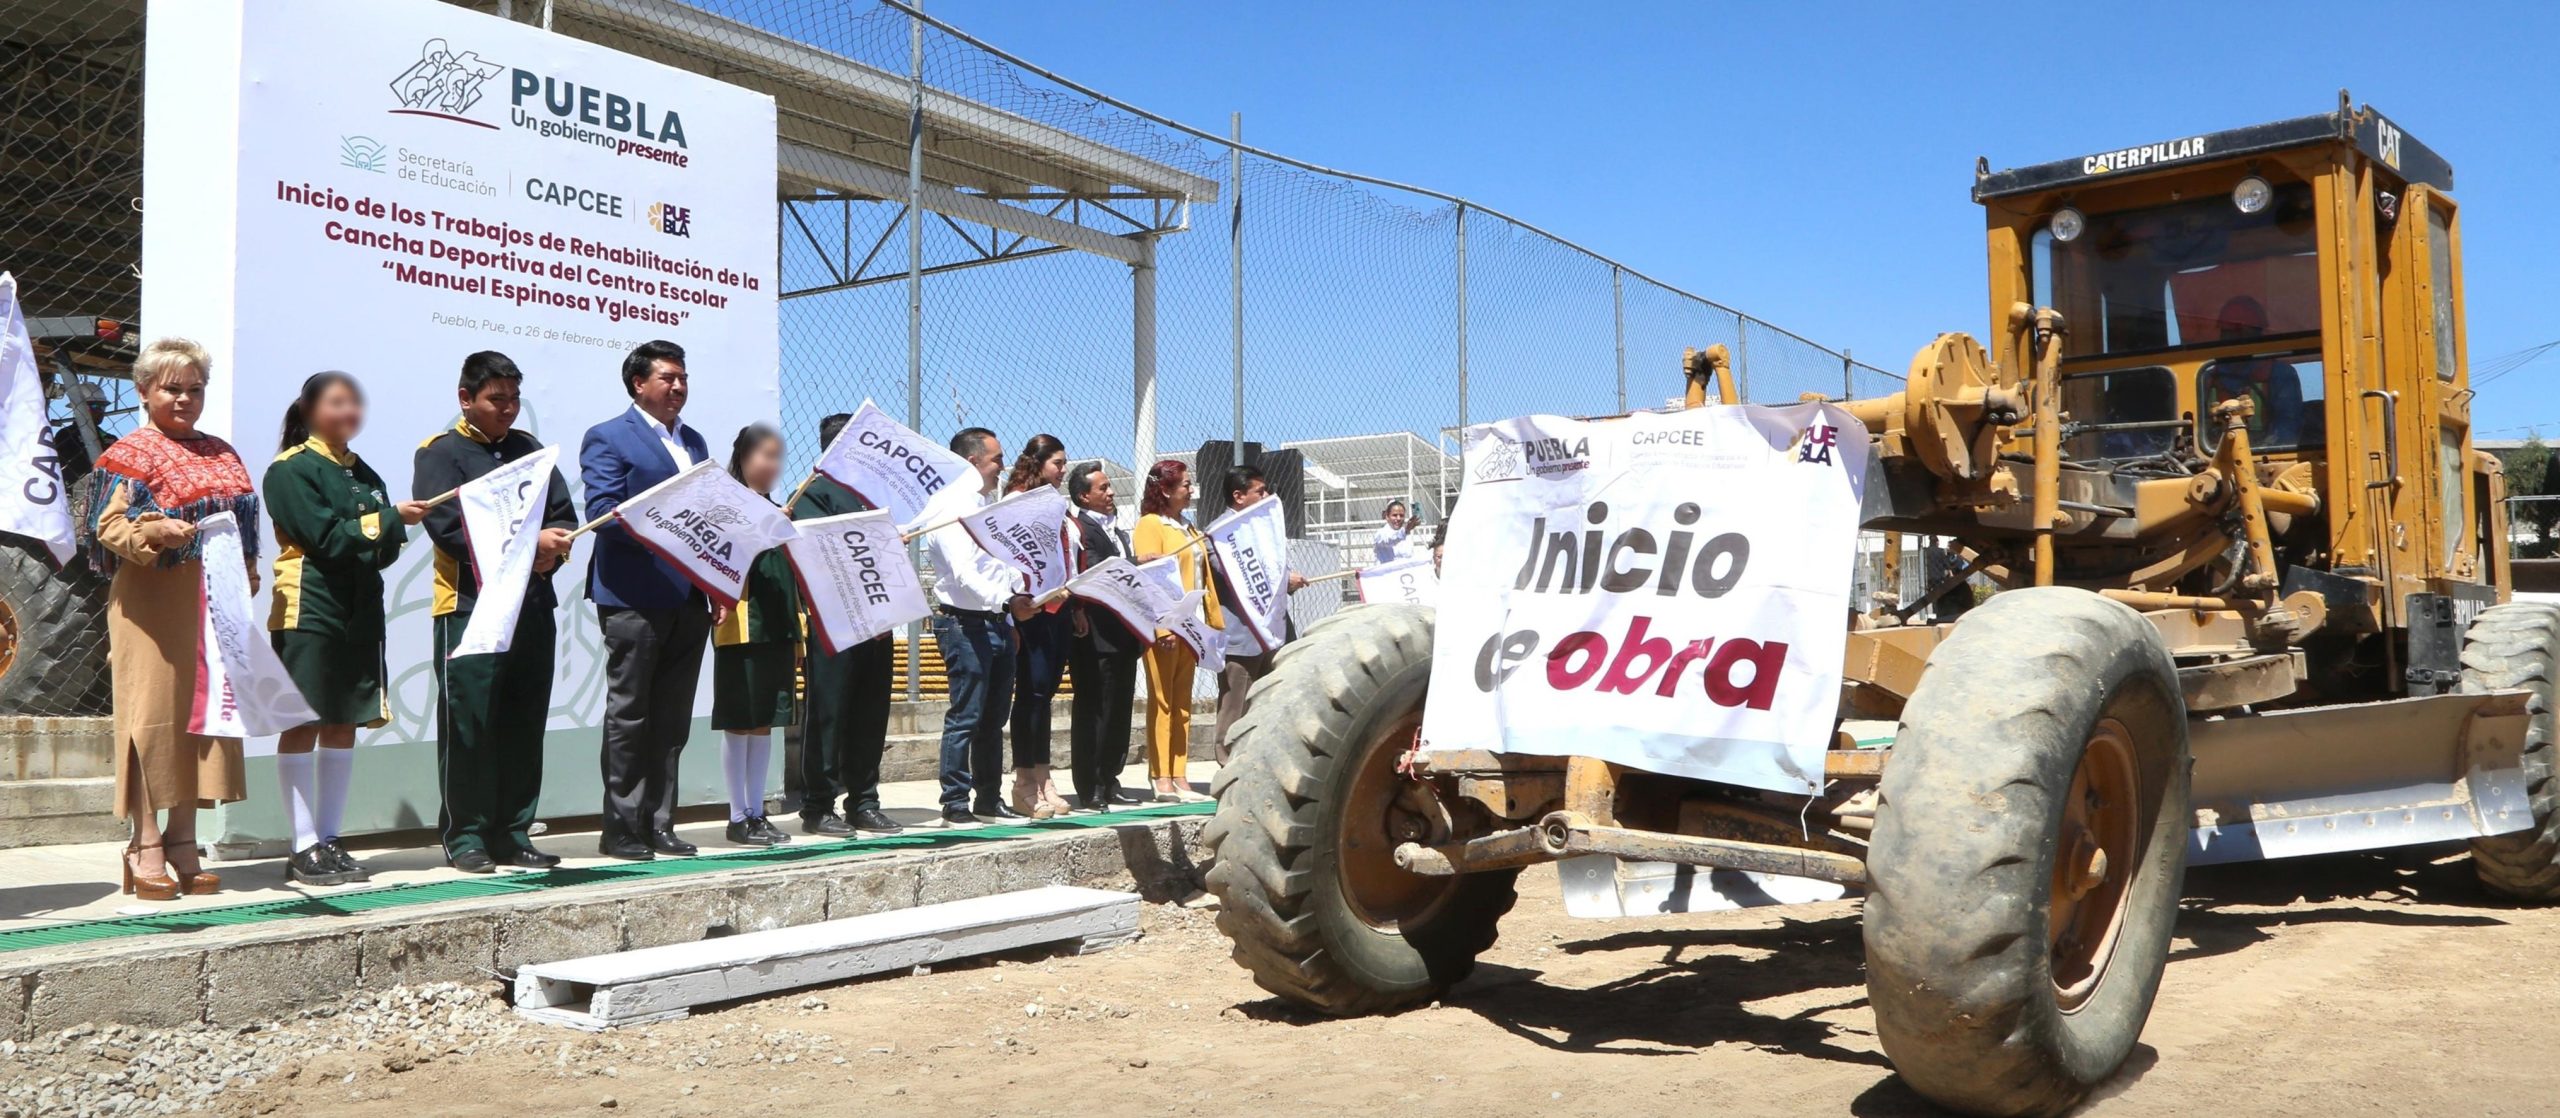 Comienzan trabajos de rehabilitación de cancha deportiva en Centro Escolar de Puebla